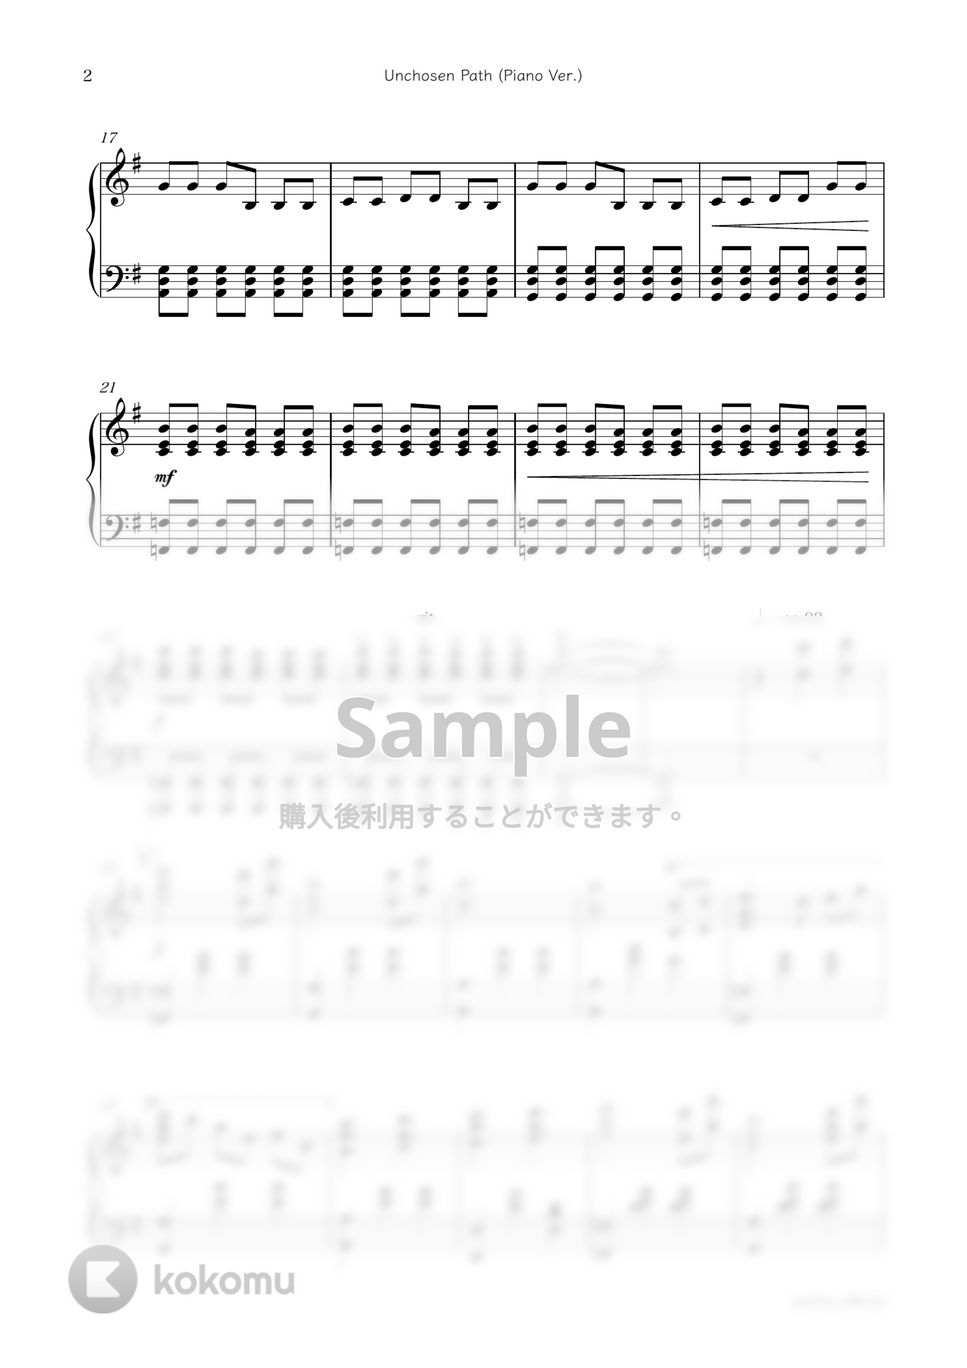 ドラマ『純愛ディソナンス』OST - Unchosen Path (Piano Ver.) by sammy